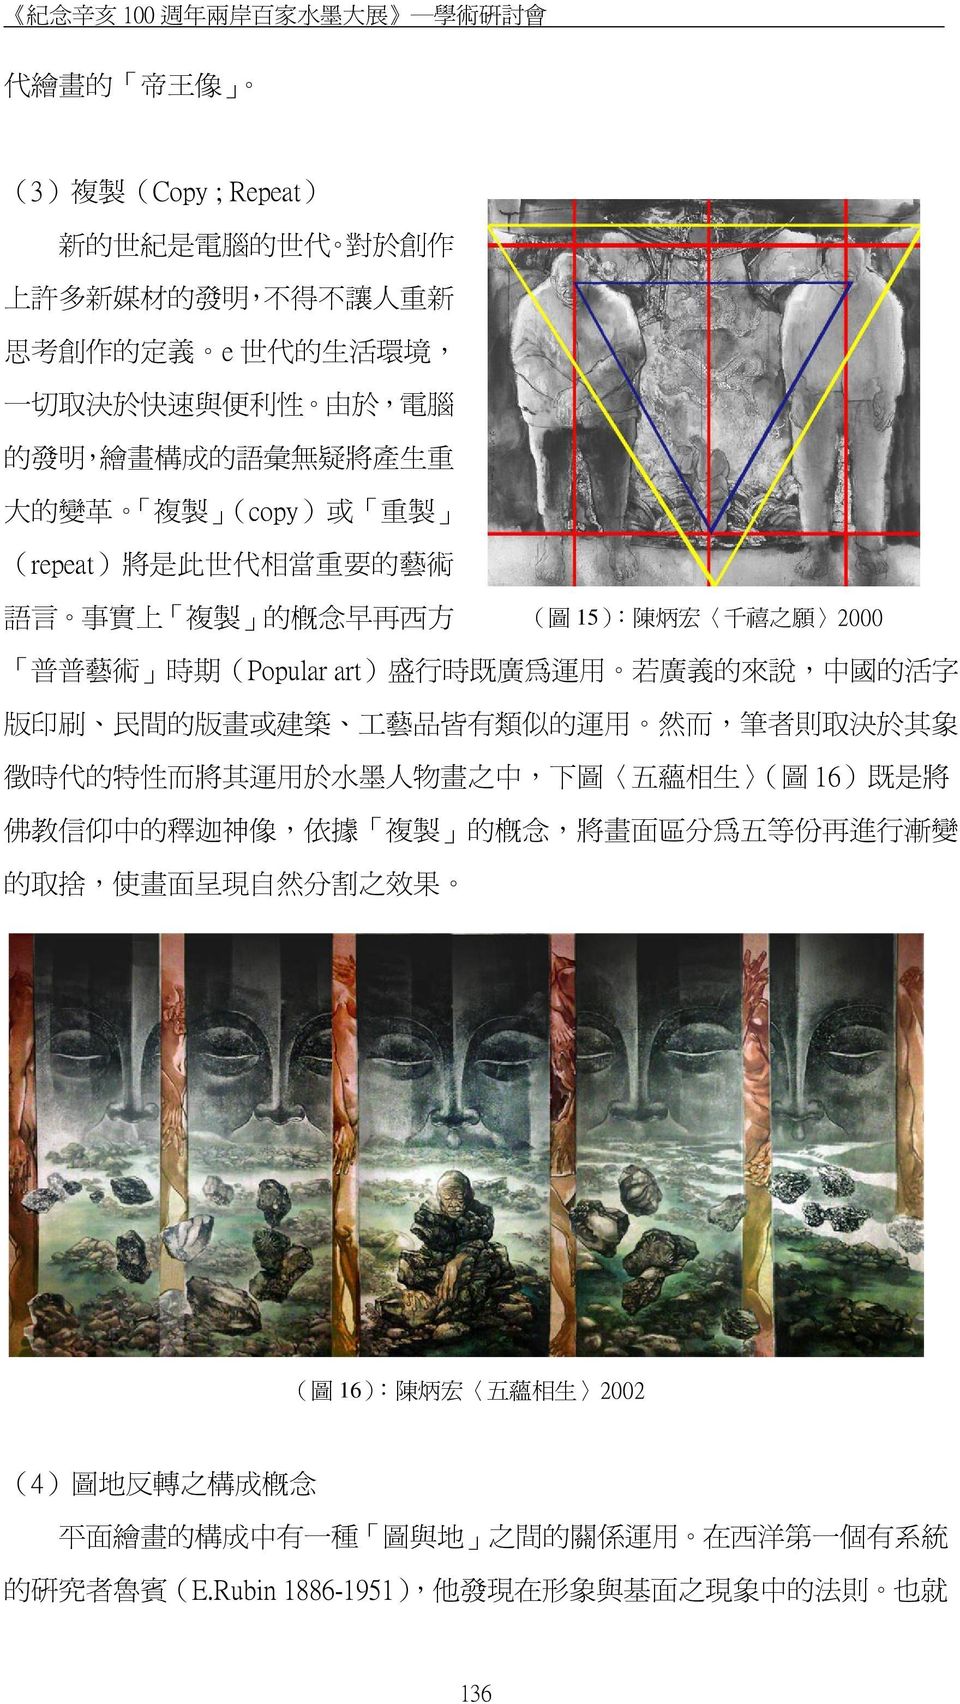 的 來 說, 中 國 的 活 字 版 印 刷 民 間 的 版 畫 或 建 築 工 藝 品 皆 有 類 似 的 運 用 然 而, 筆 者 則 取 決 於 其 象 徵 時 代 的 特 性 而 將 其 運 用 於 水 墨 人 物 畫 之 中, 下 圖 五 蘊 相 生 ( 圖 16) 既 是 將 佛 教 信 仰 中 的 釋 迦 神 像, 依 據 複 製 的 概 念, 將 畫 面 區 分 為 五 等 份